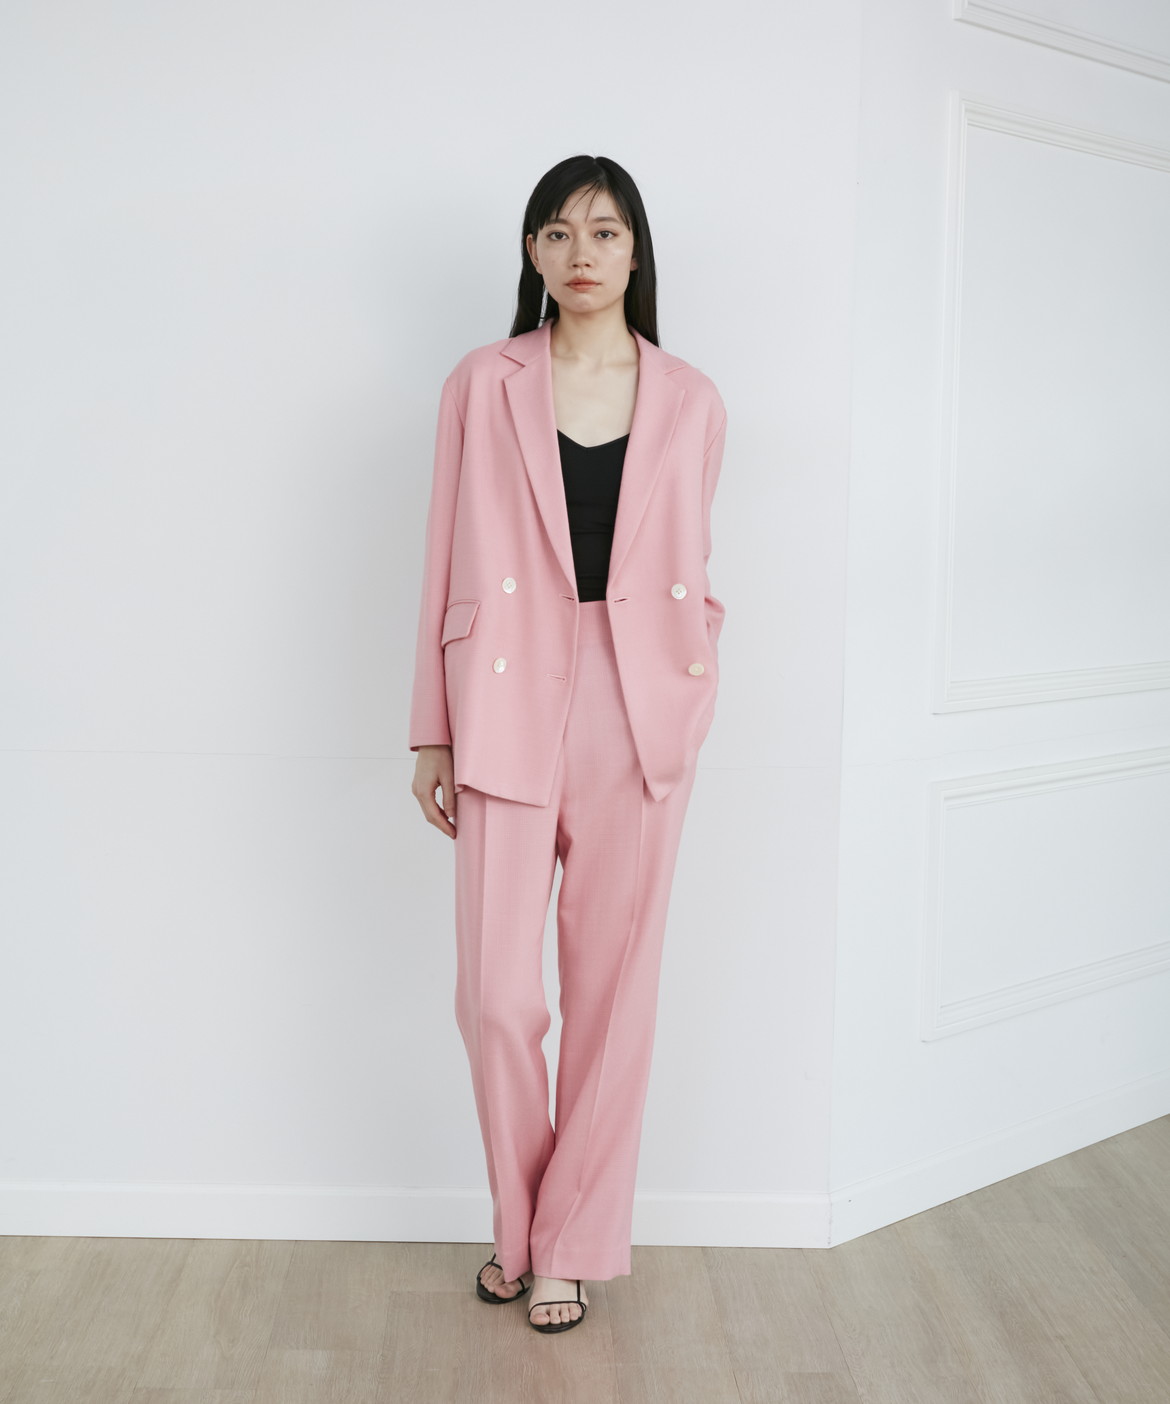 【美品】INED スーツ セットアップ パンツ 9号 グレー ピンク